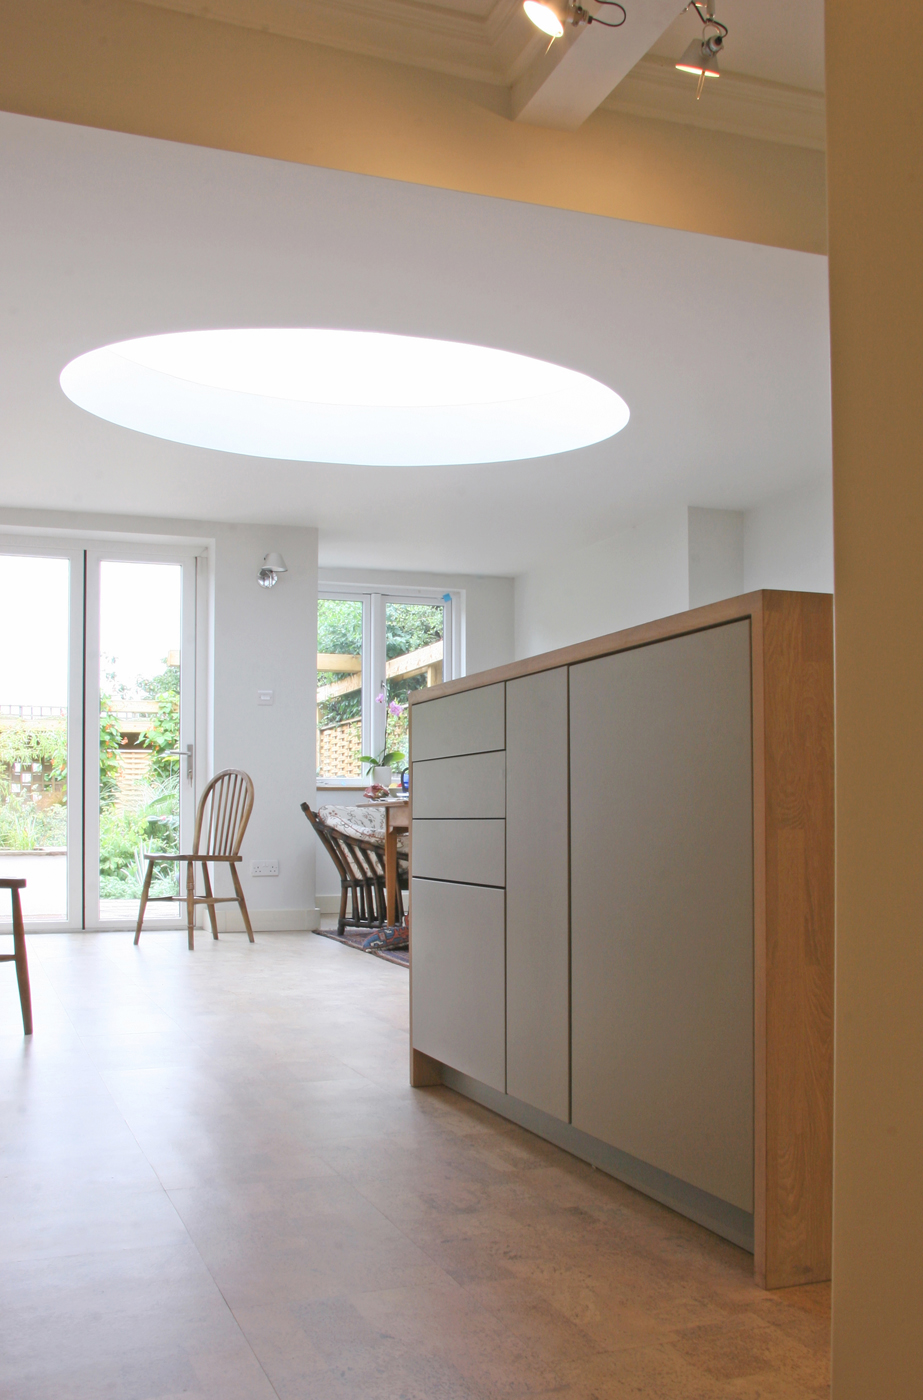 leicht_kitchen_extension_rogue_designs_architecture_oxford_5